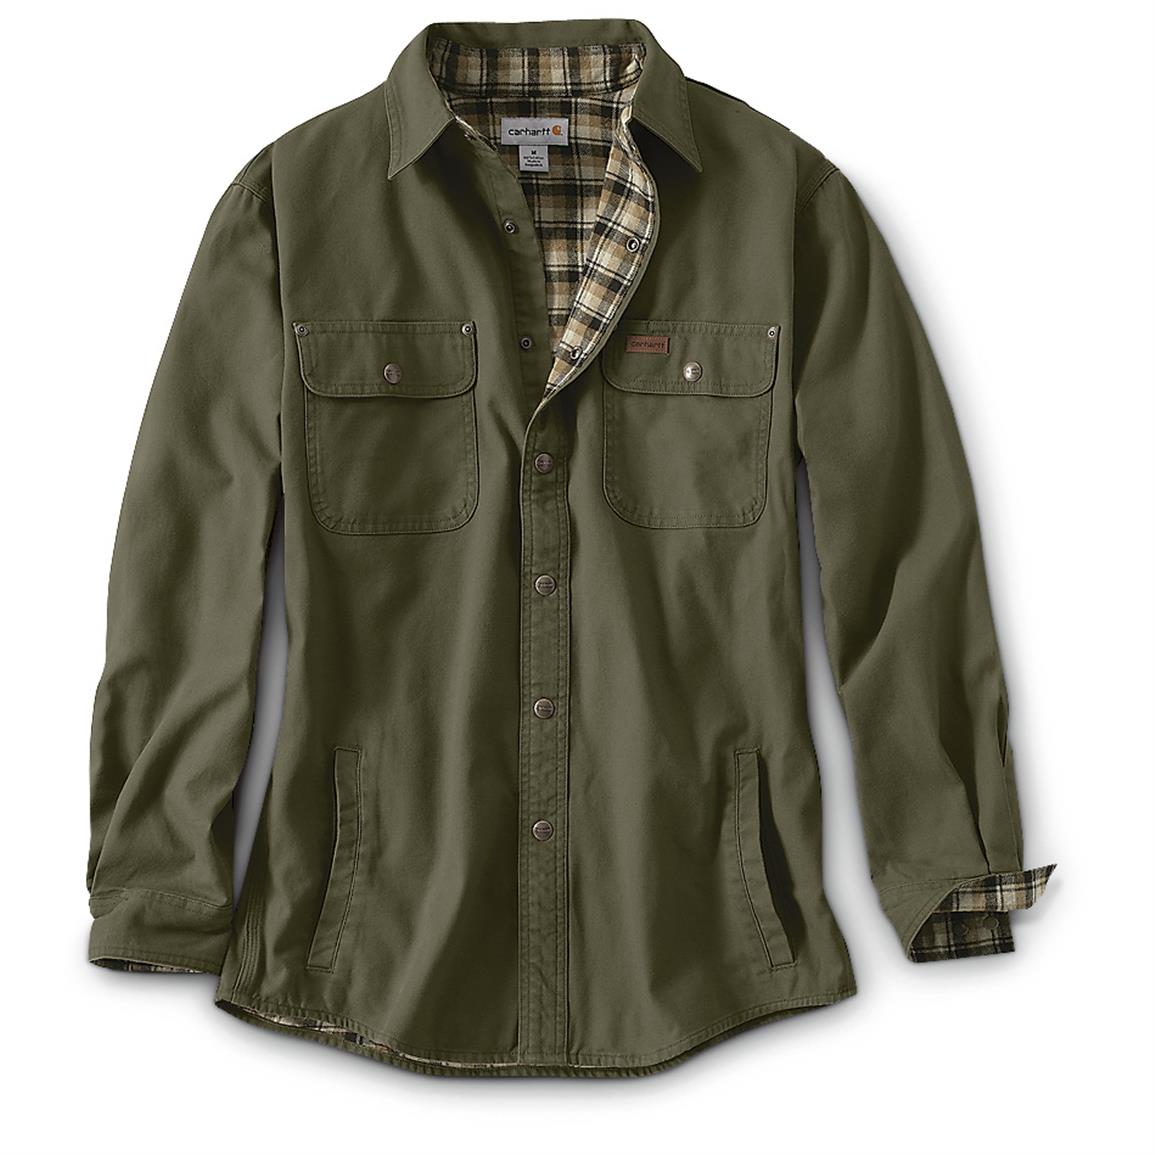 Carhartt Men's Weathered Canvas Shirt Jacket - 607664, Shirts at